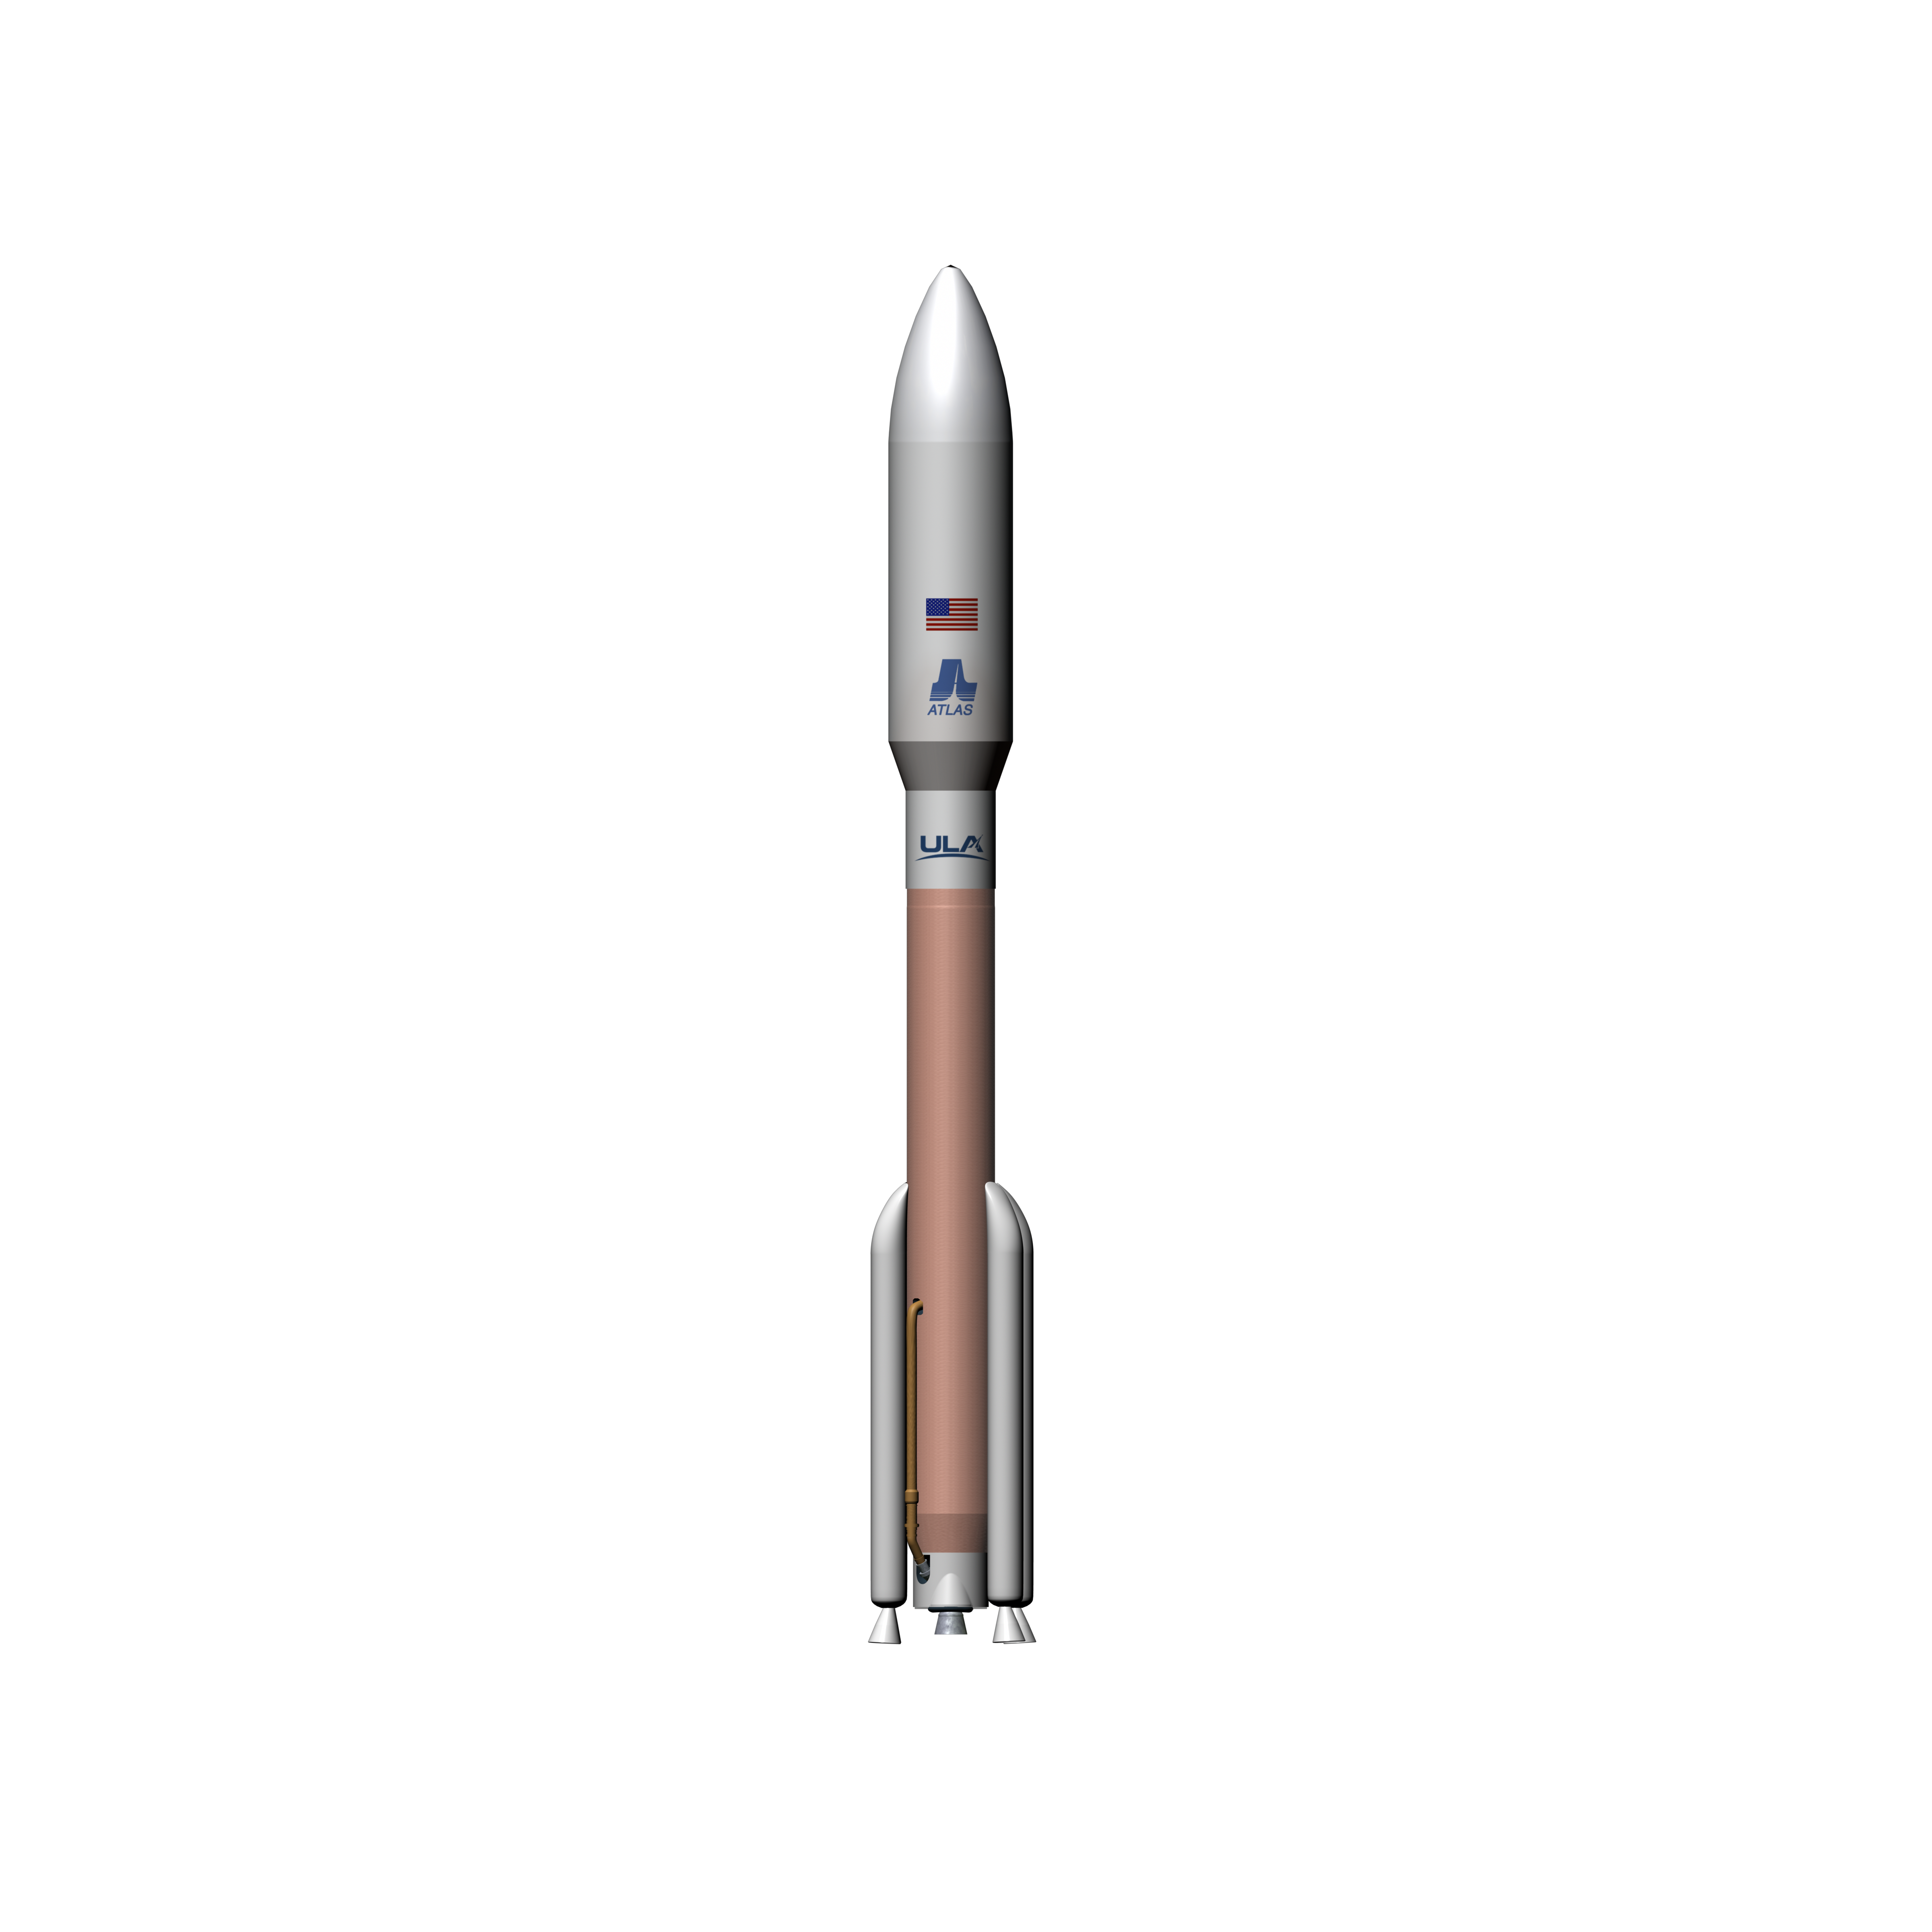 Atlas V 551 3D Model